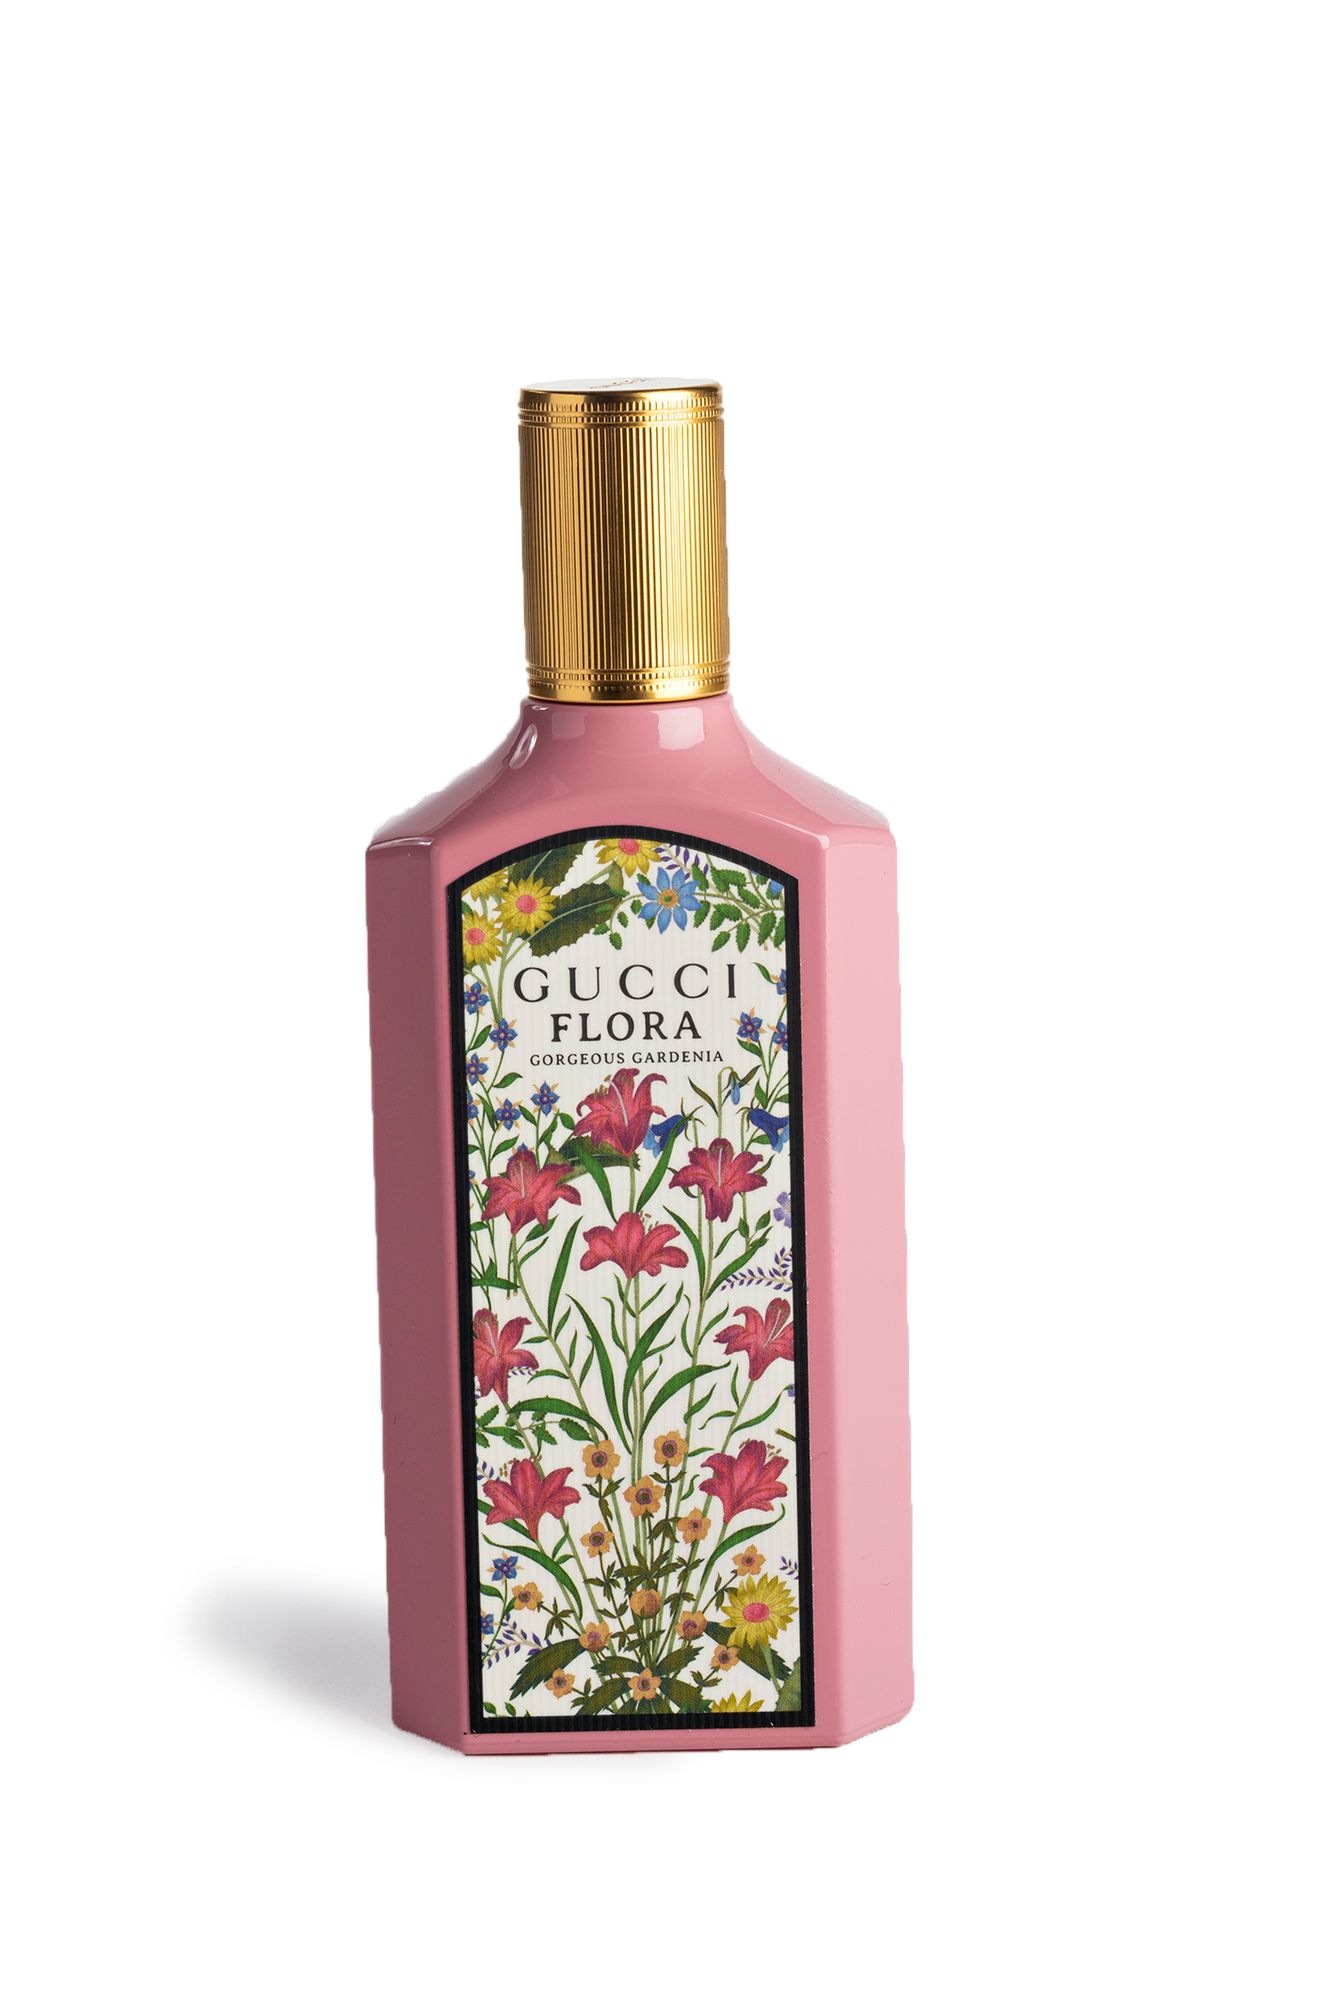  Tuoksu kuin kukkaketo! Guccin Flora sisältää mm. jasmiinia ja päärynänkukkaa. 100 ml 137,50 € © Tommi Tuomi